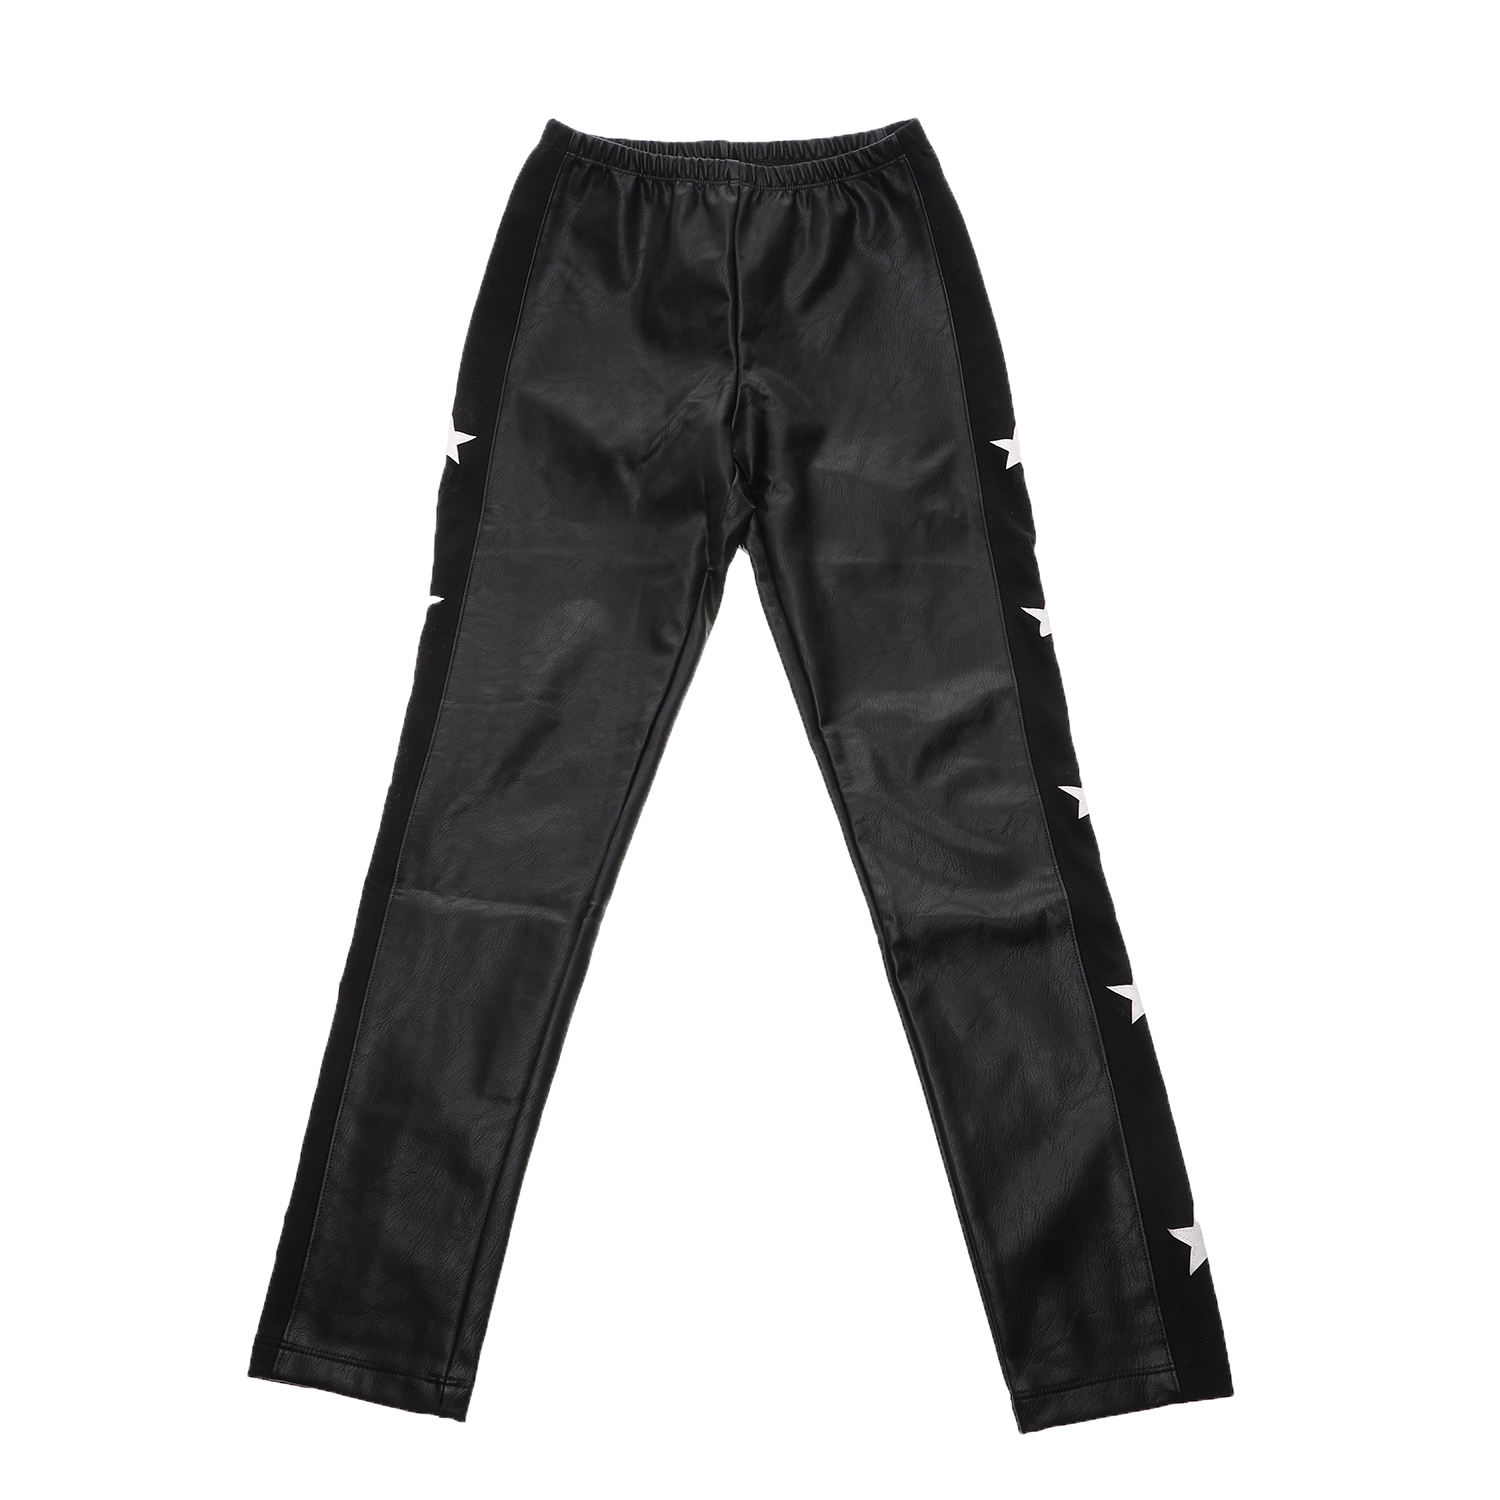 Παιδικά/Girls/Ρούχα/Παντελόνια JAKIOO - Παιδικό παντελόνι JAKIOO C/STELLE μαύρο